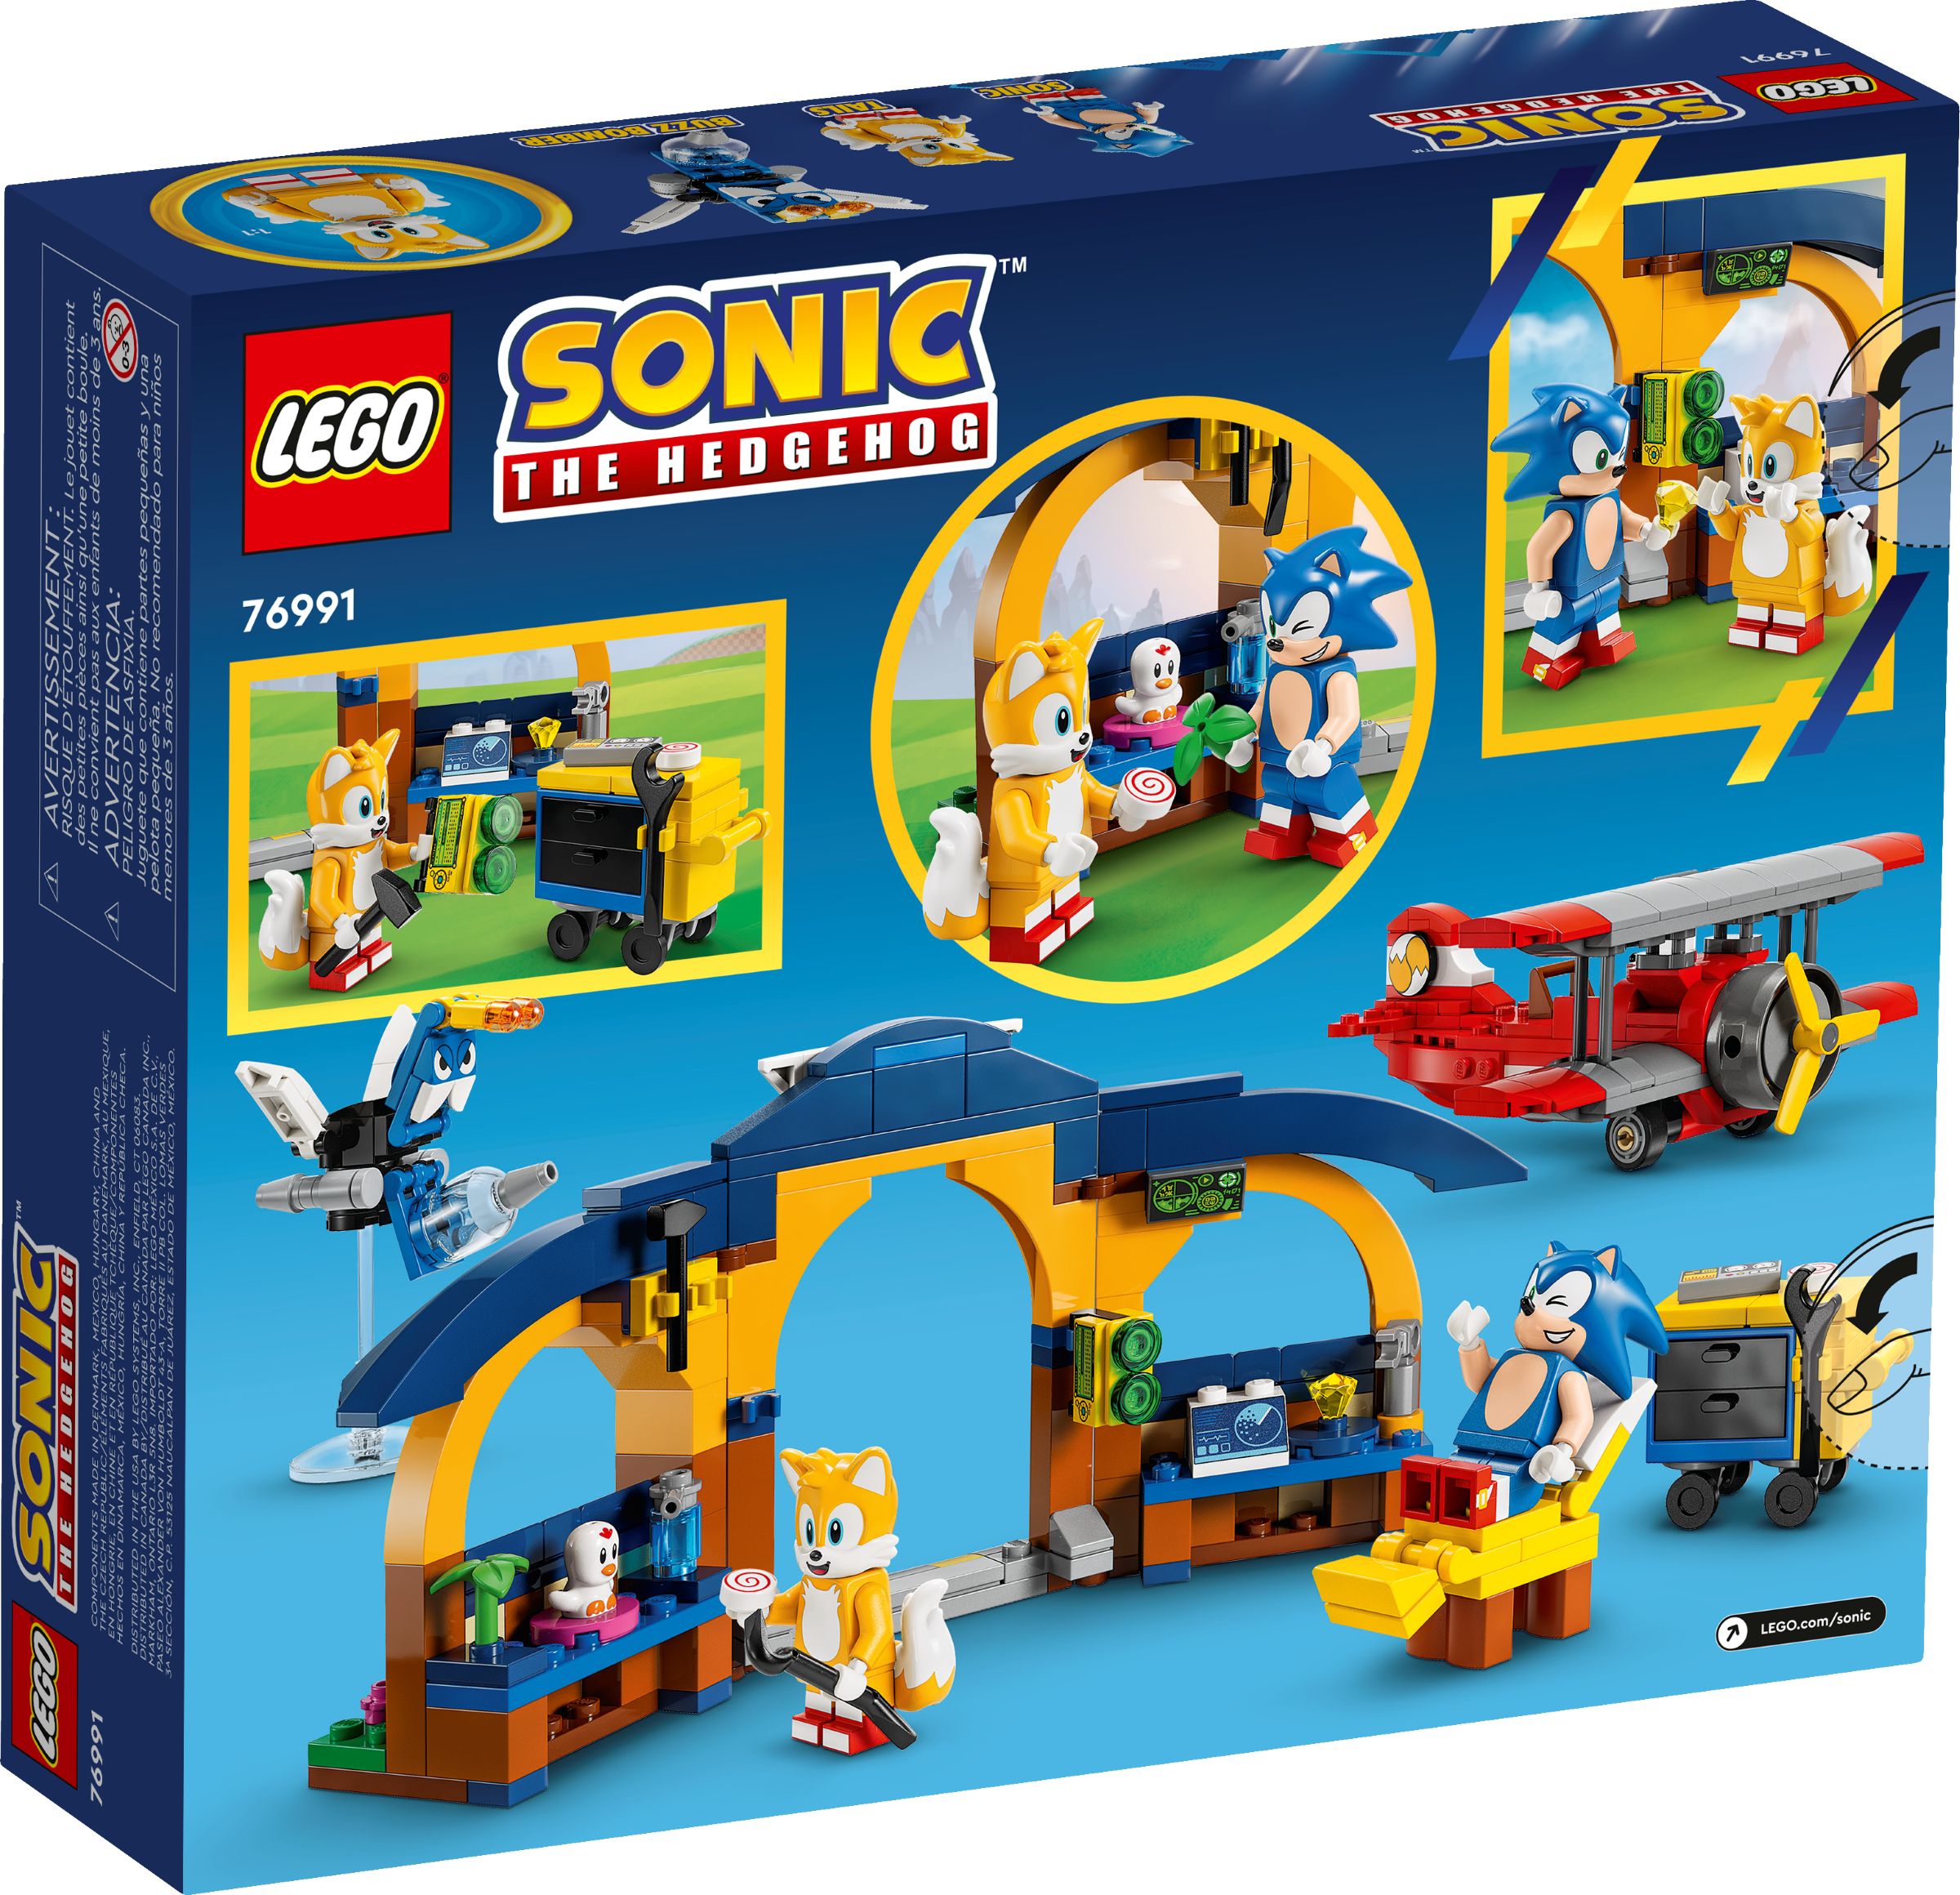 LEGO Sonic the Hedgehog 76991 Tails‘ Tornadoflieger mit Werkstatt LEGO_76991_alt6.jpg